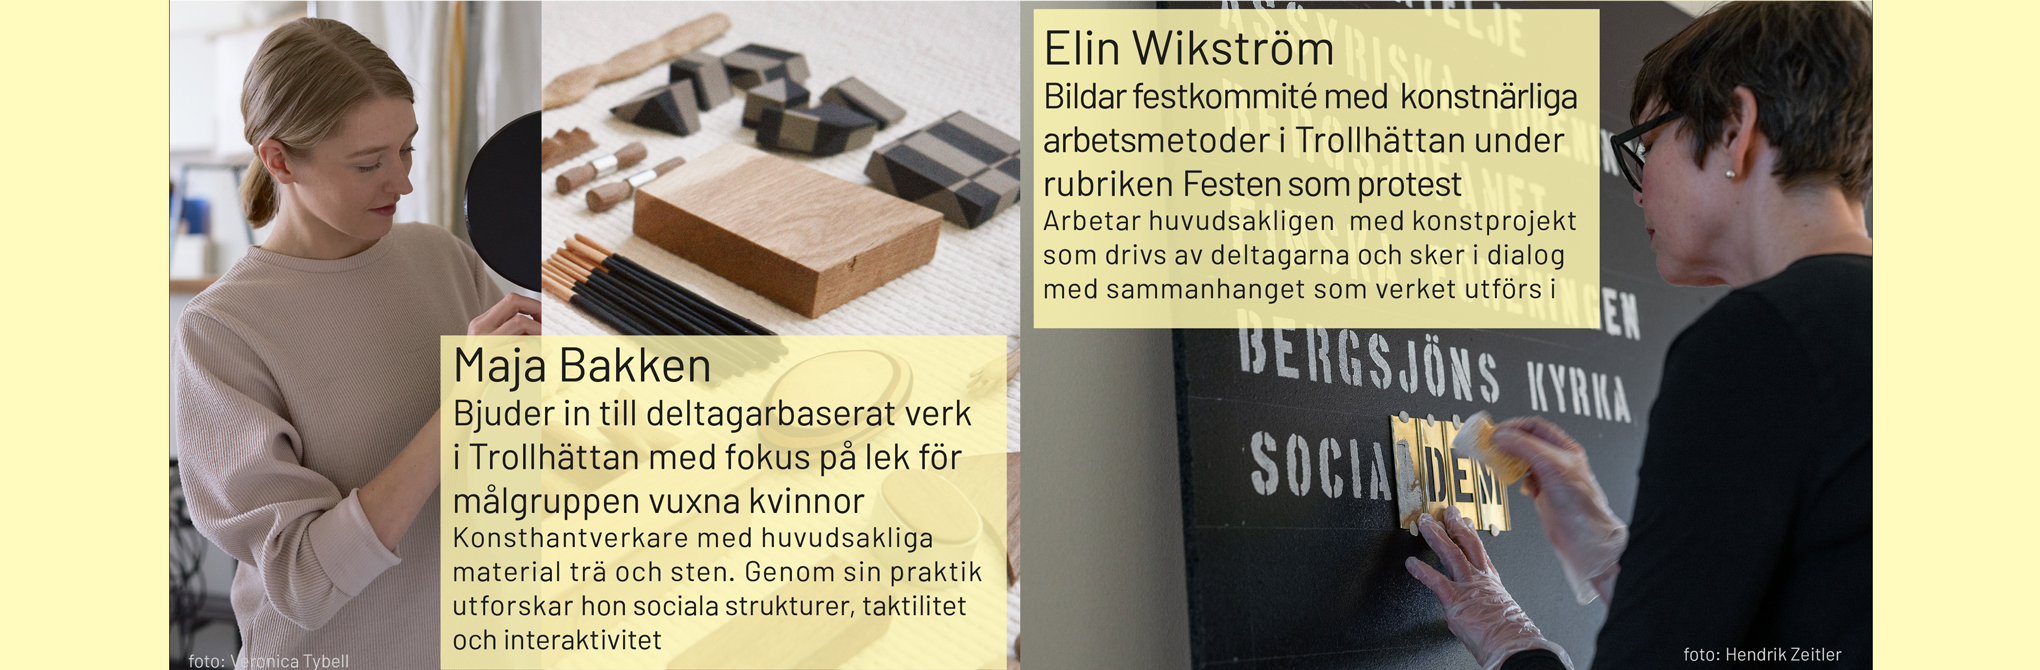 Kollage av bilder på konstnärerna Maja Bakken och Elin Wikström